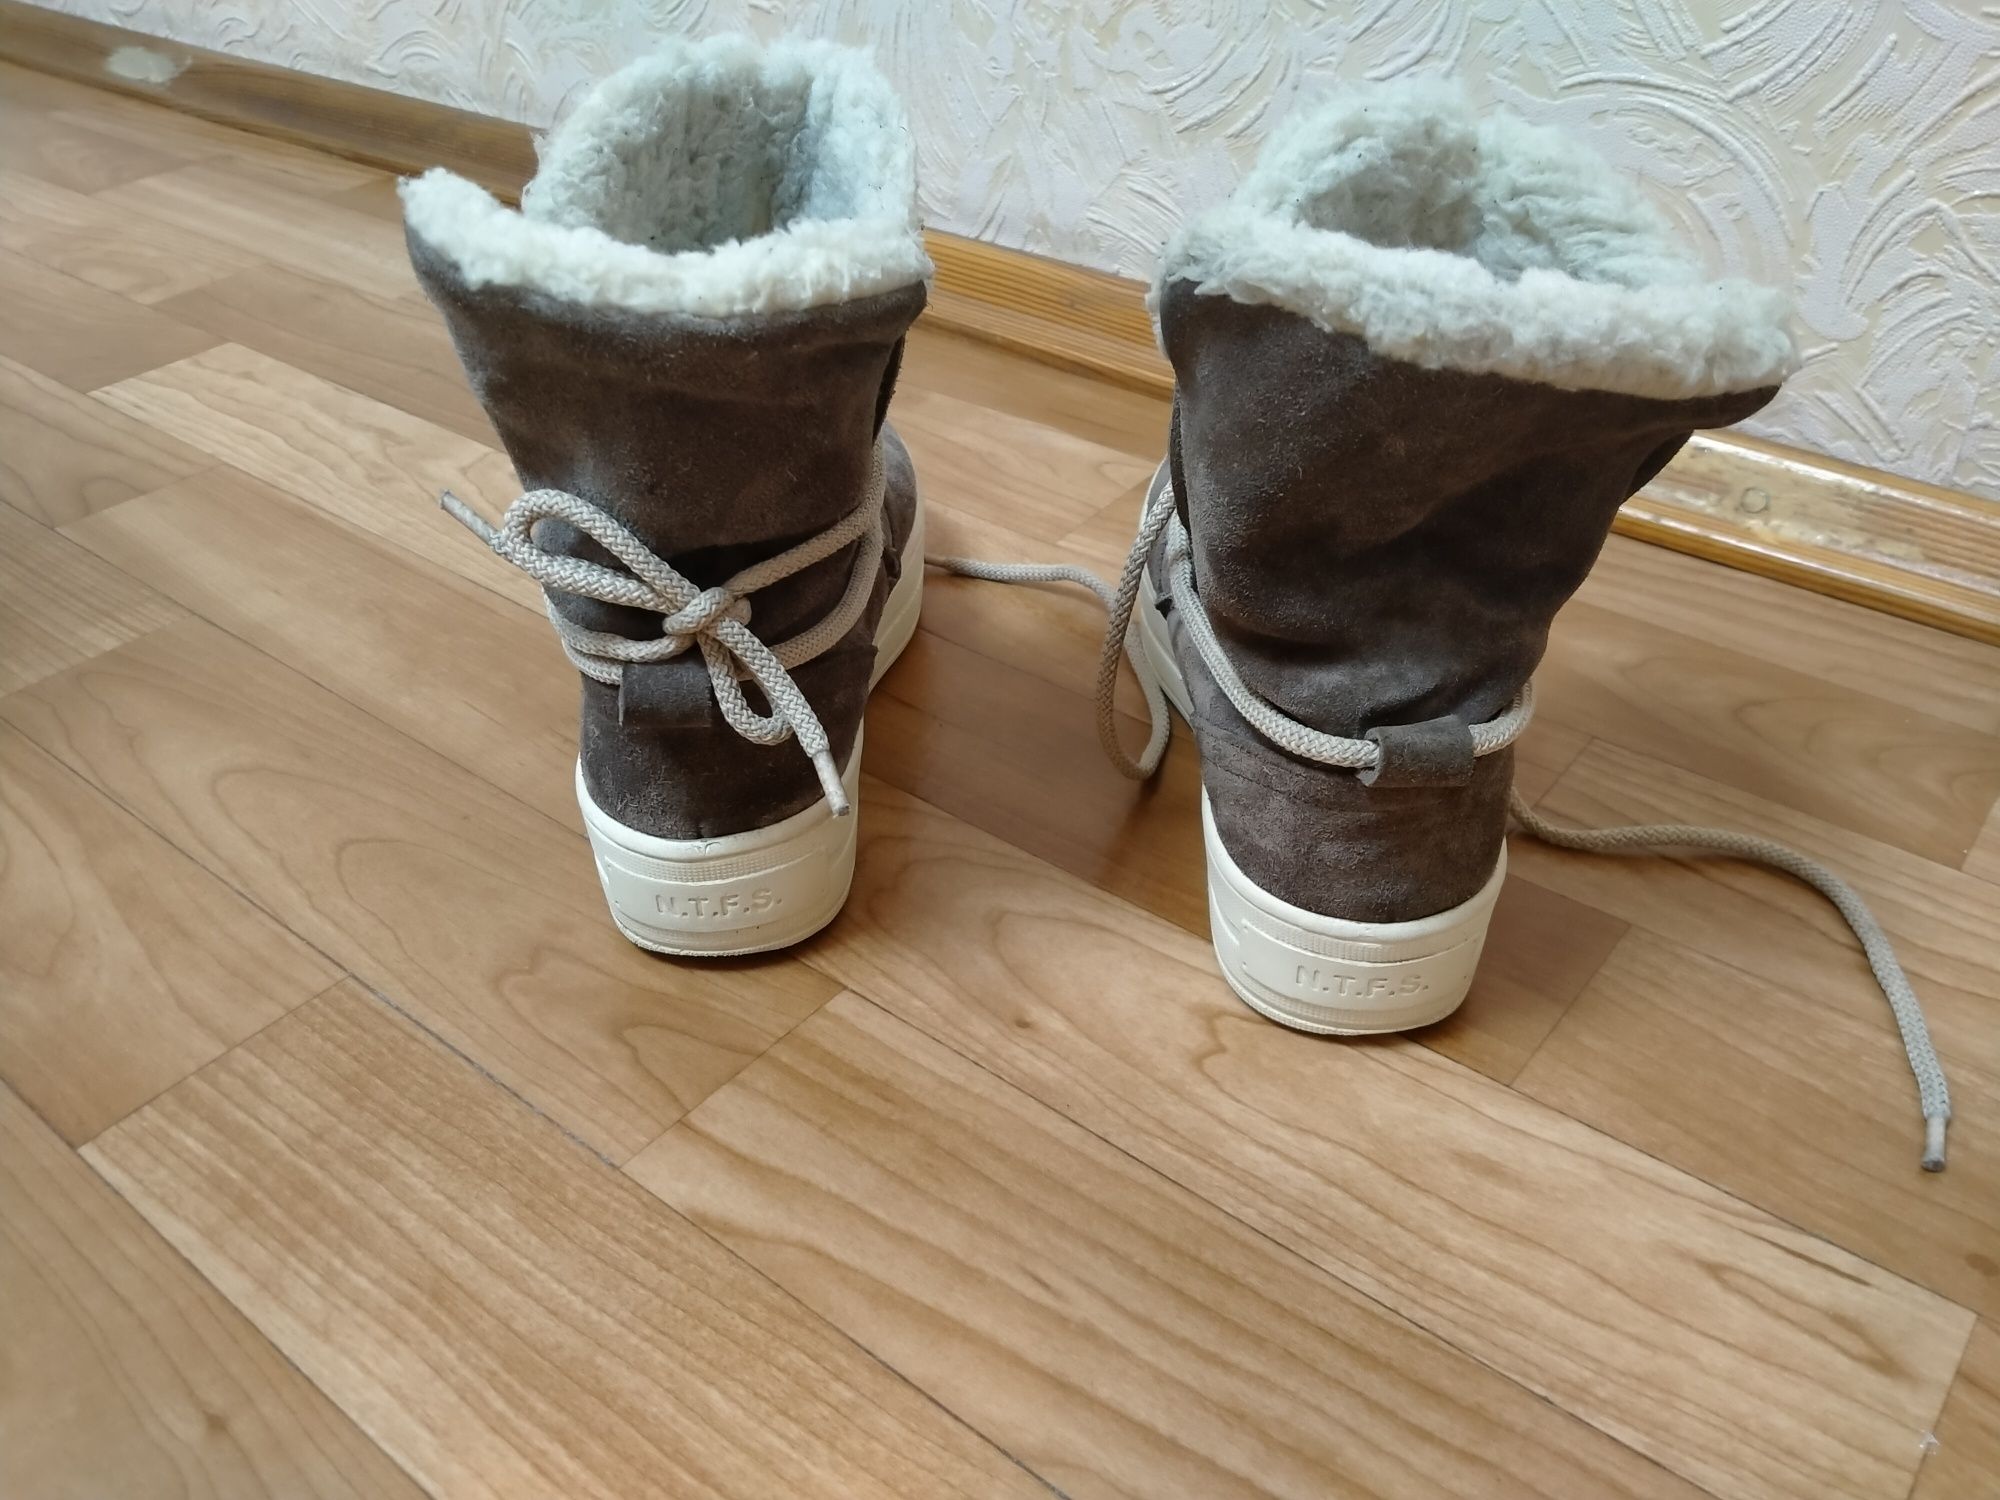 Ботинки угги сапоги женские замшевые на меху зима 37р. N.T.F.S.